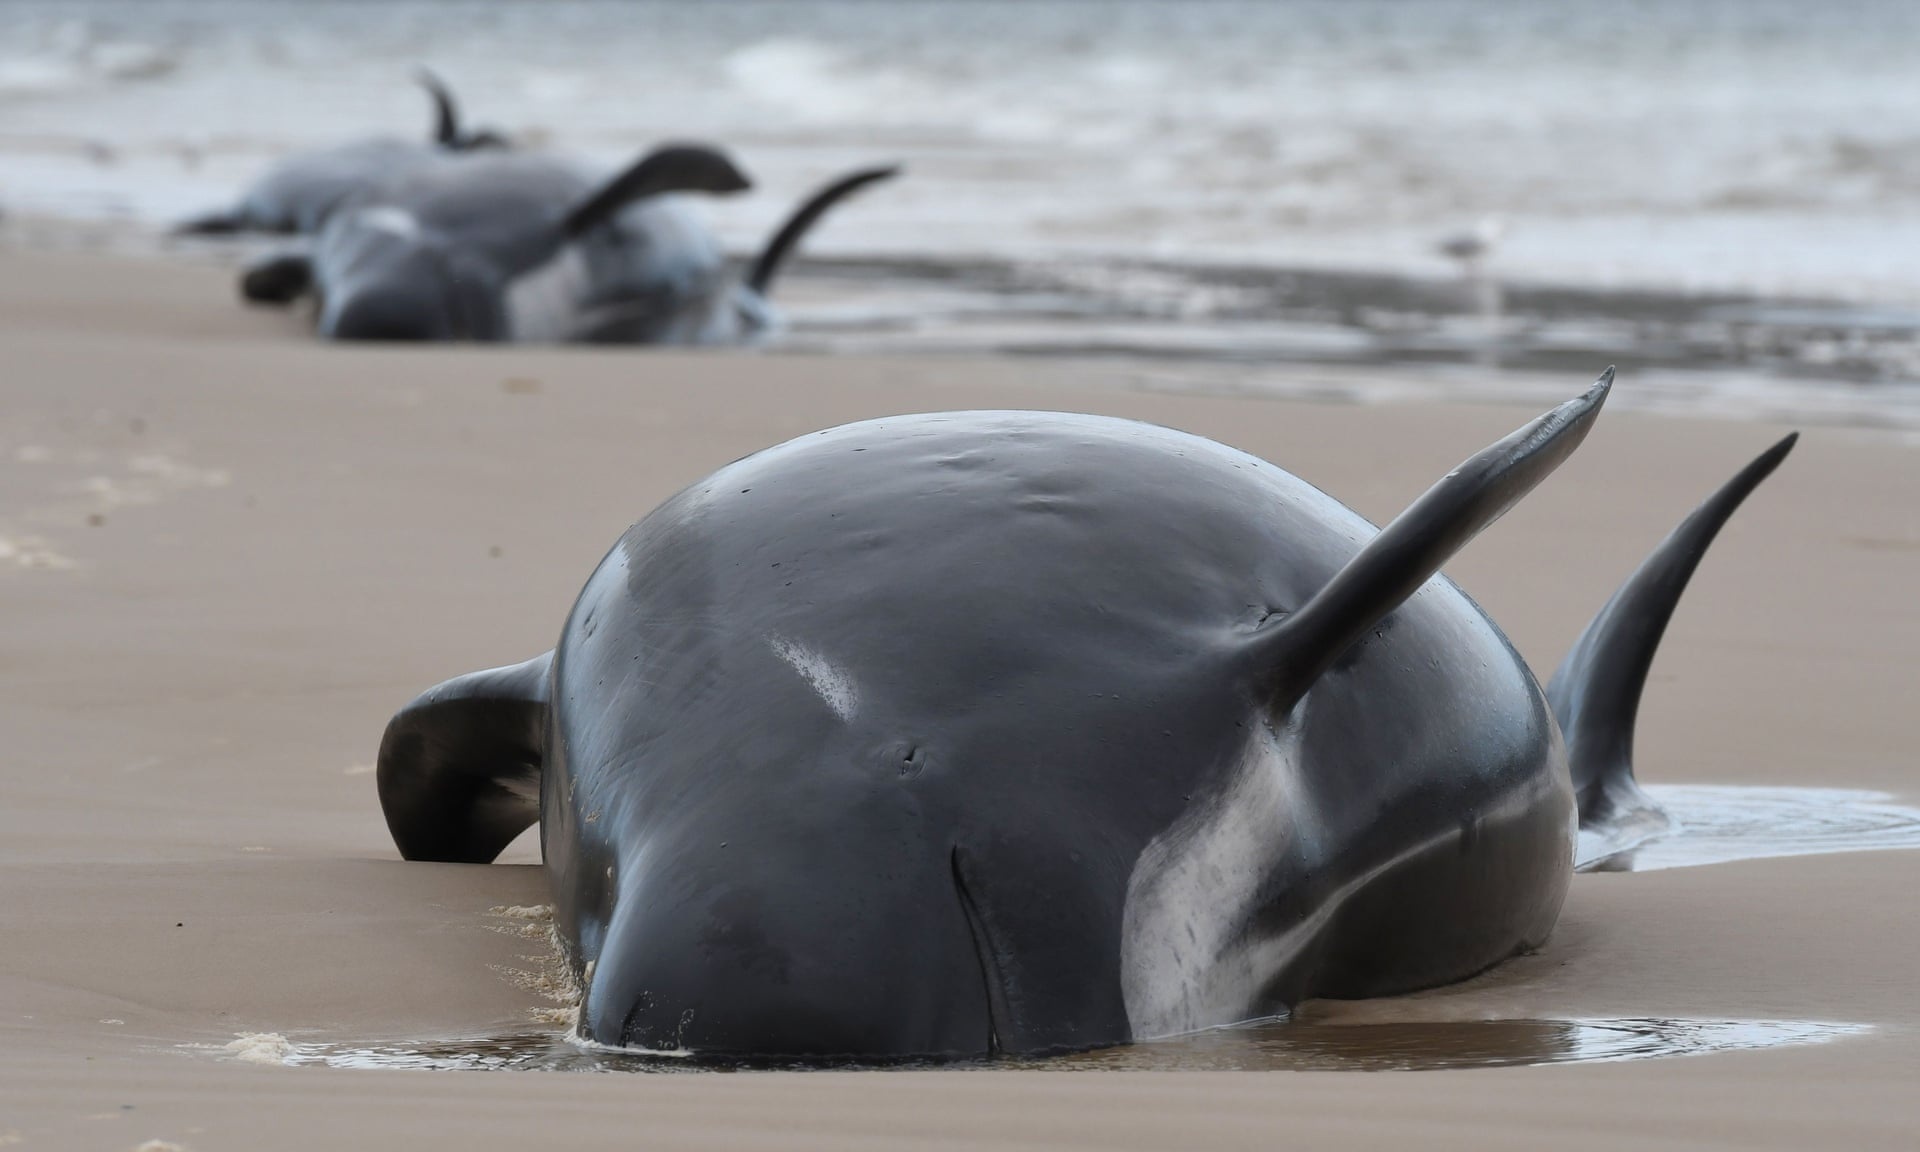 Hơn 30 con cá voi hoa tiêu mắc cạn bí ẩn ở New Zealand - 2